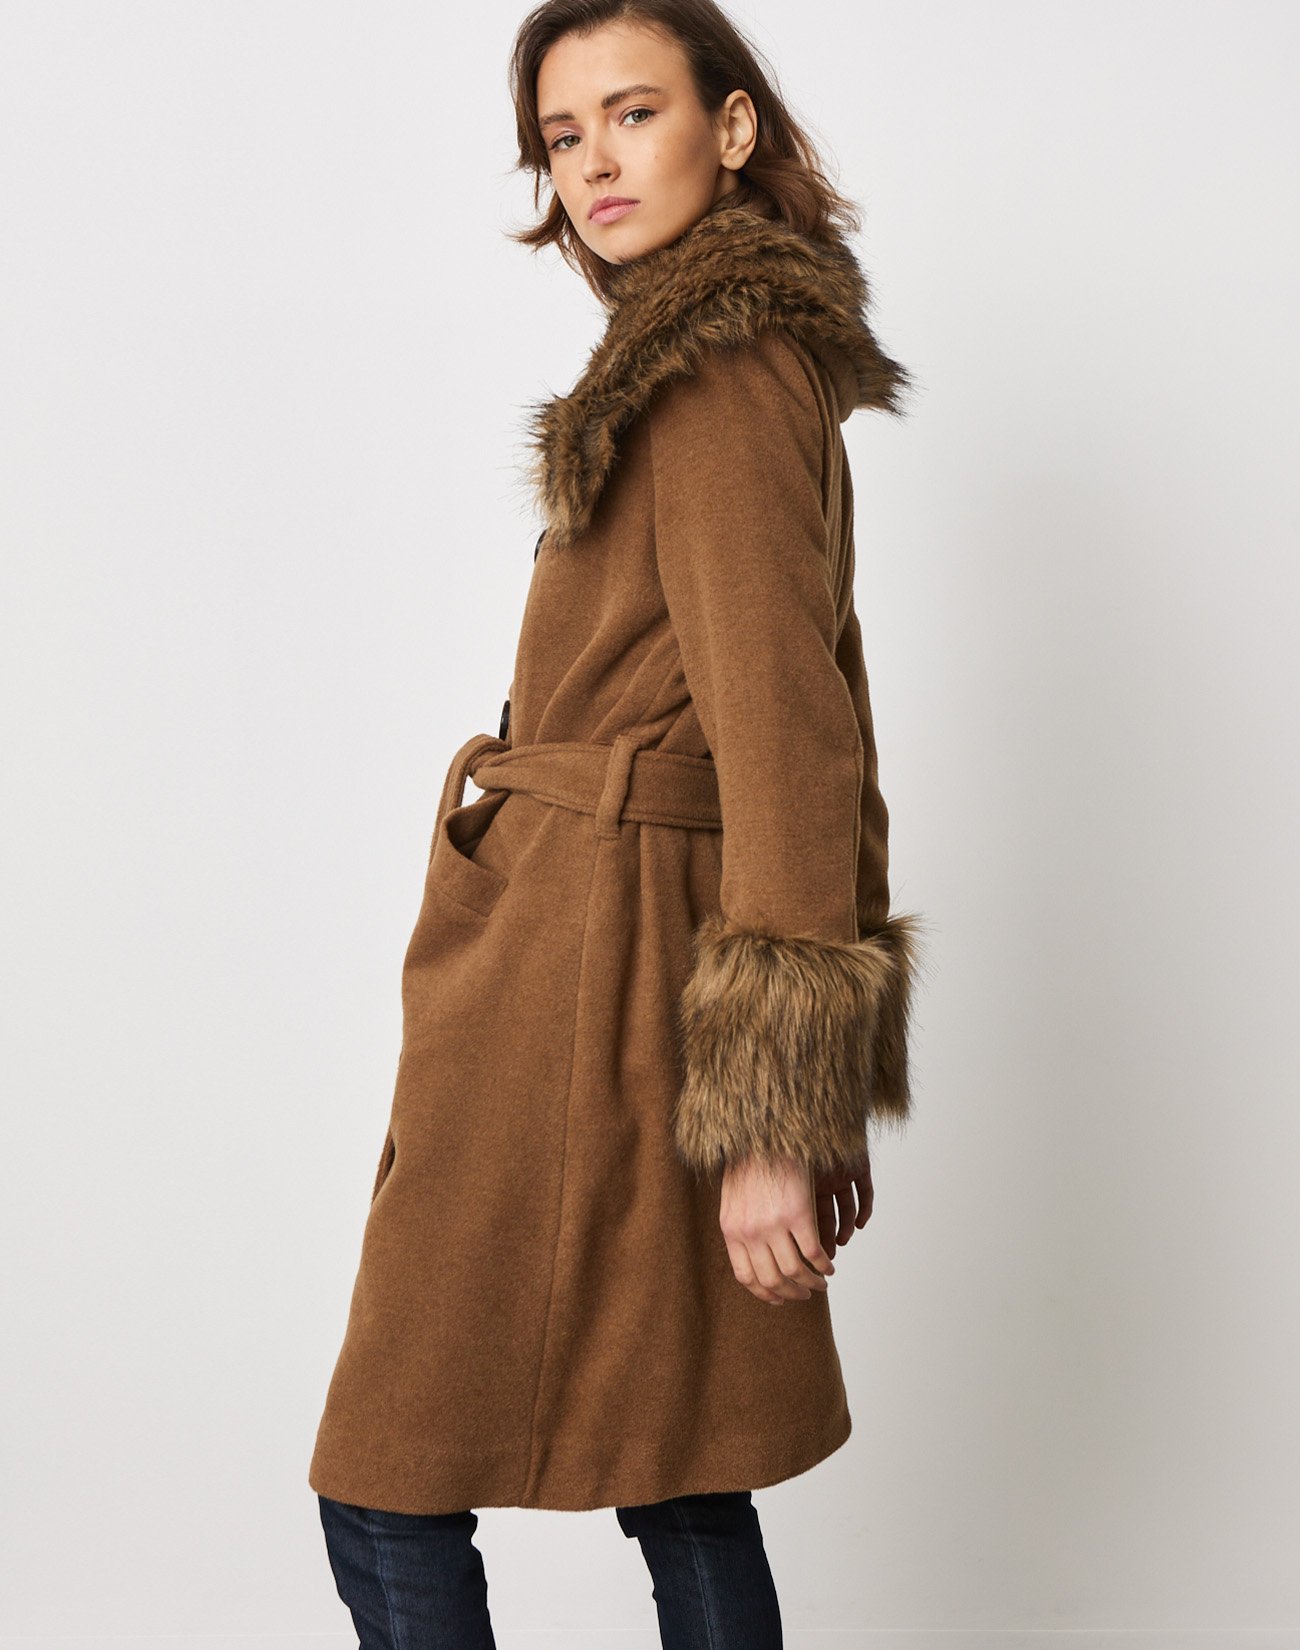 Παλτό με λεπτομέρεια συνθετική γούνα